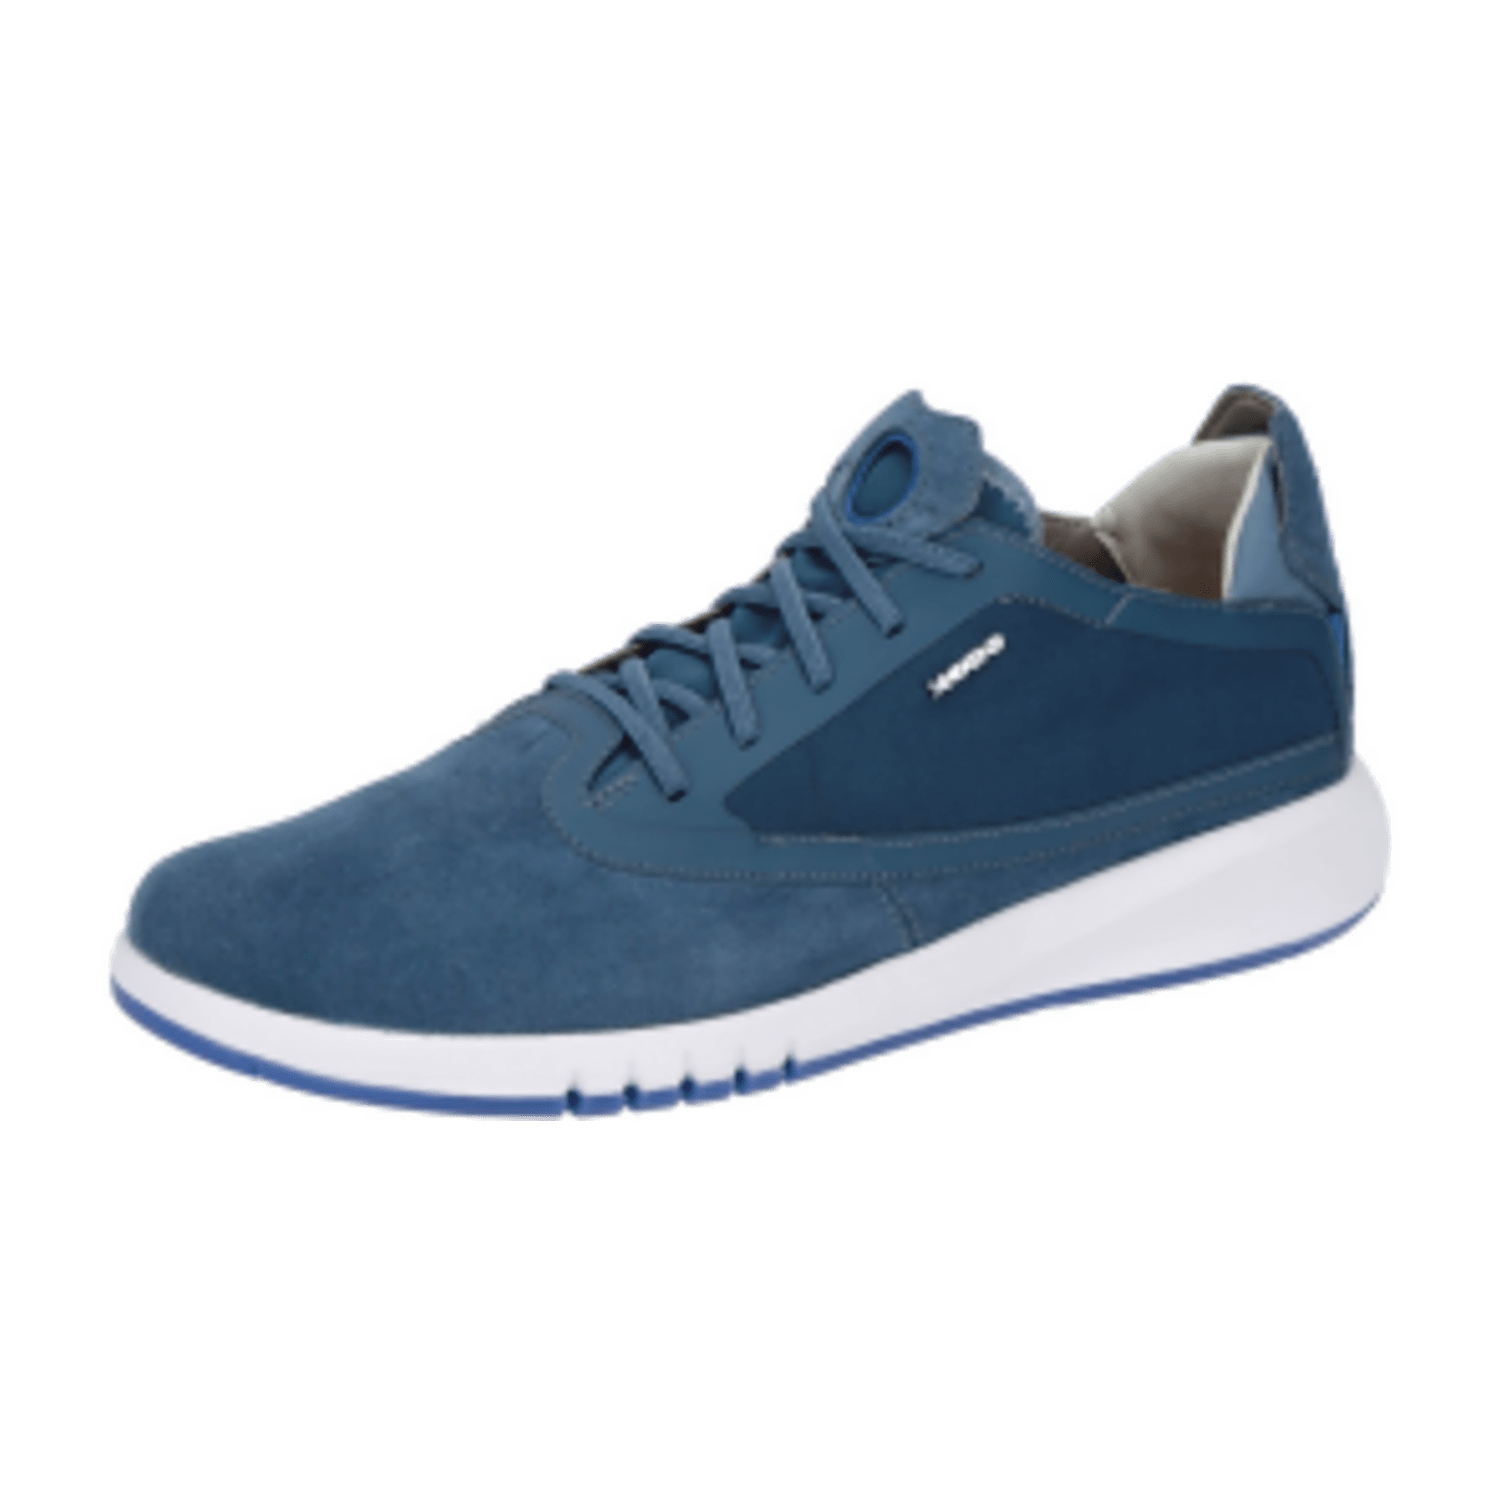 Geox Aerantis Sneaker Schuhe blau weiß U027FA